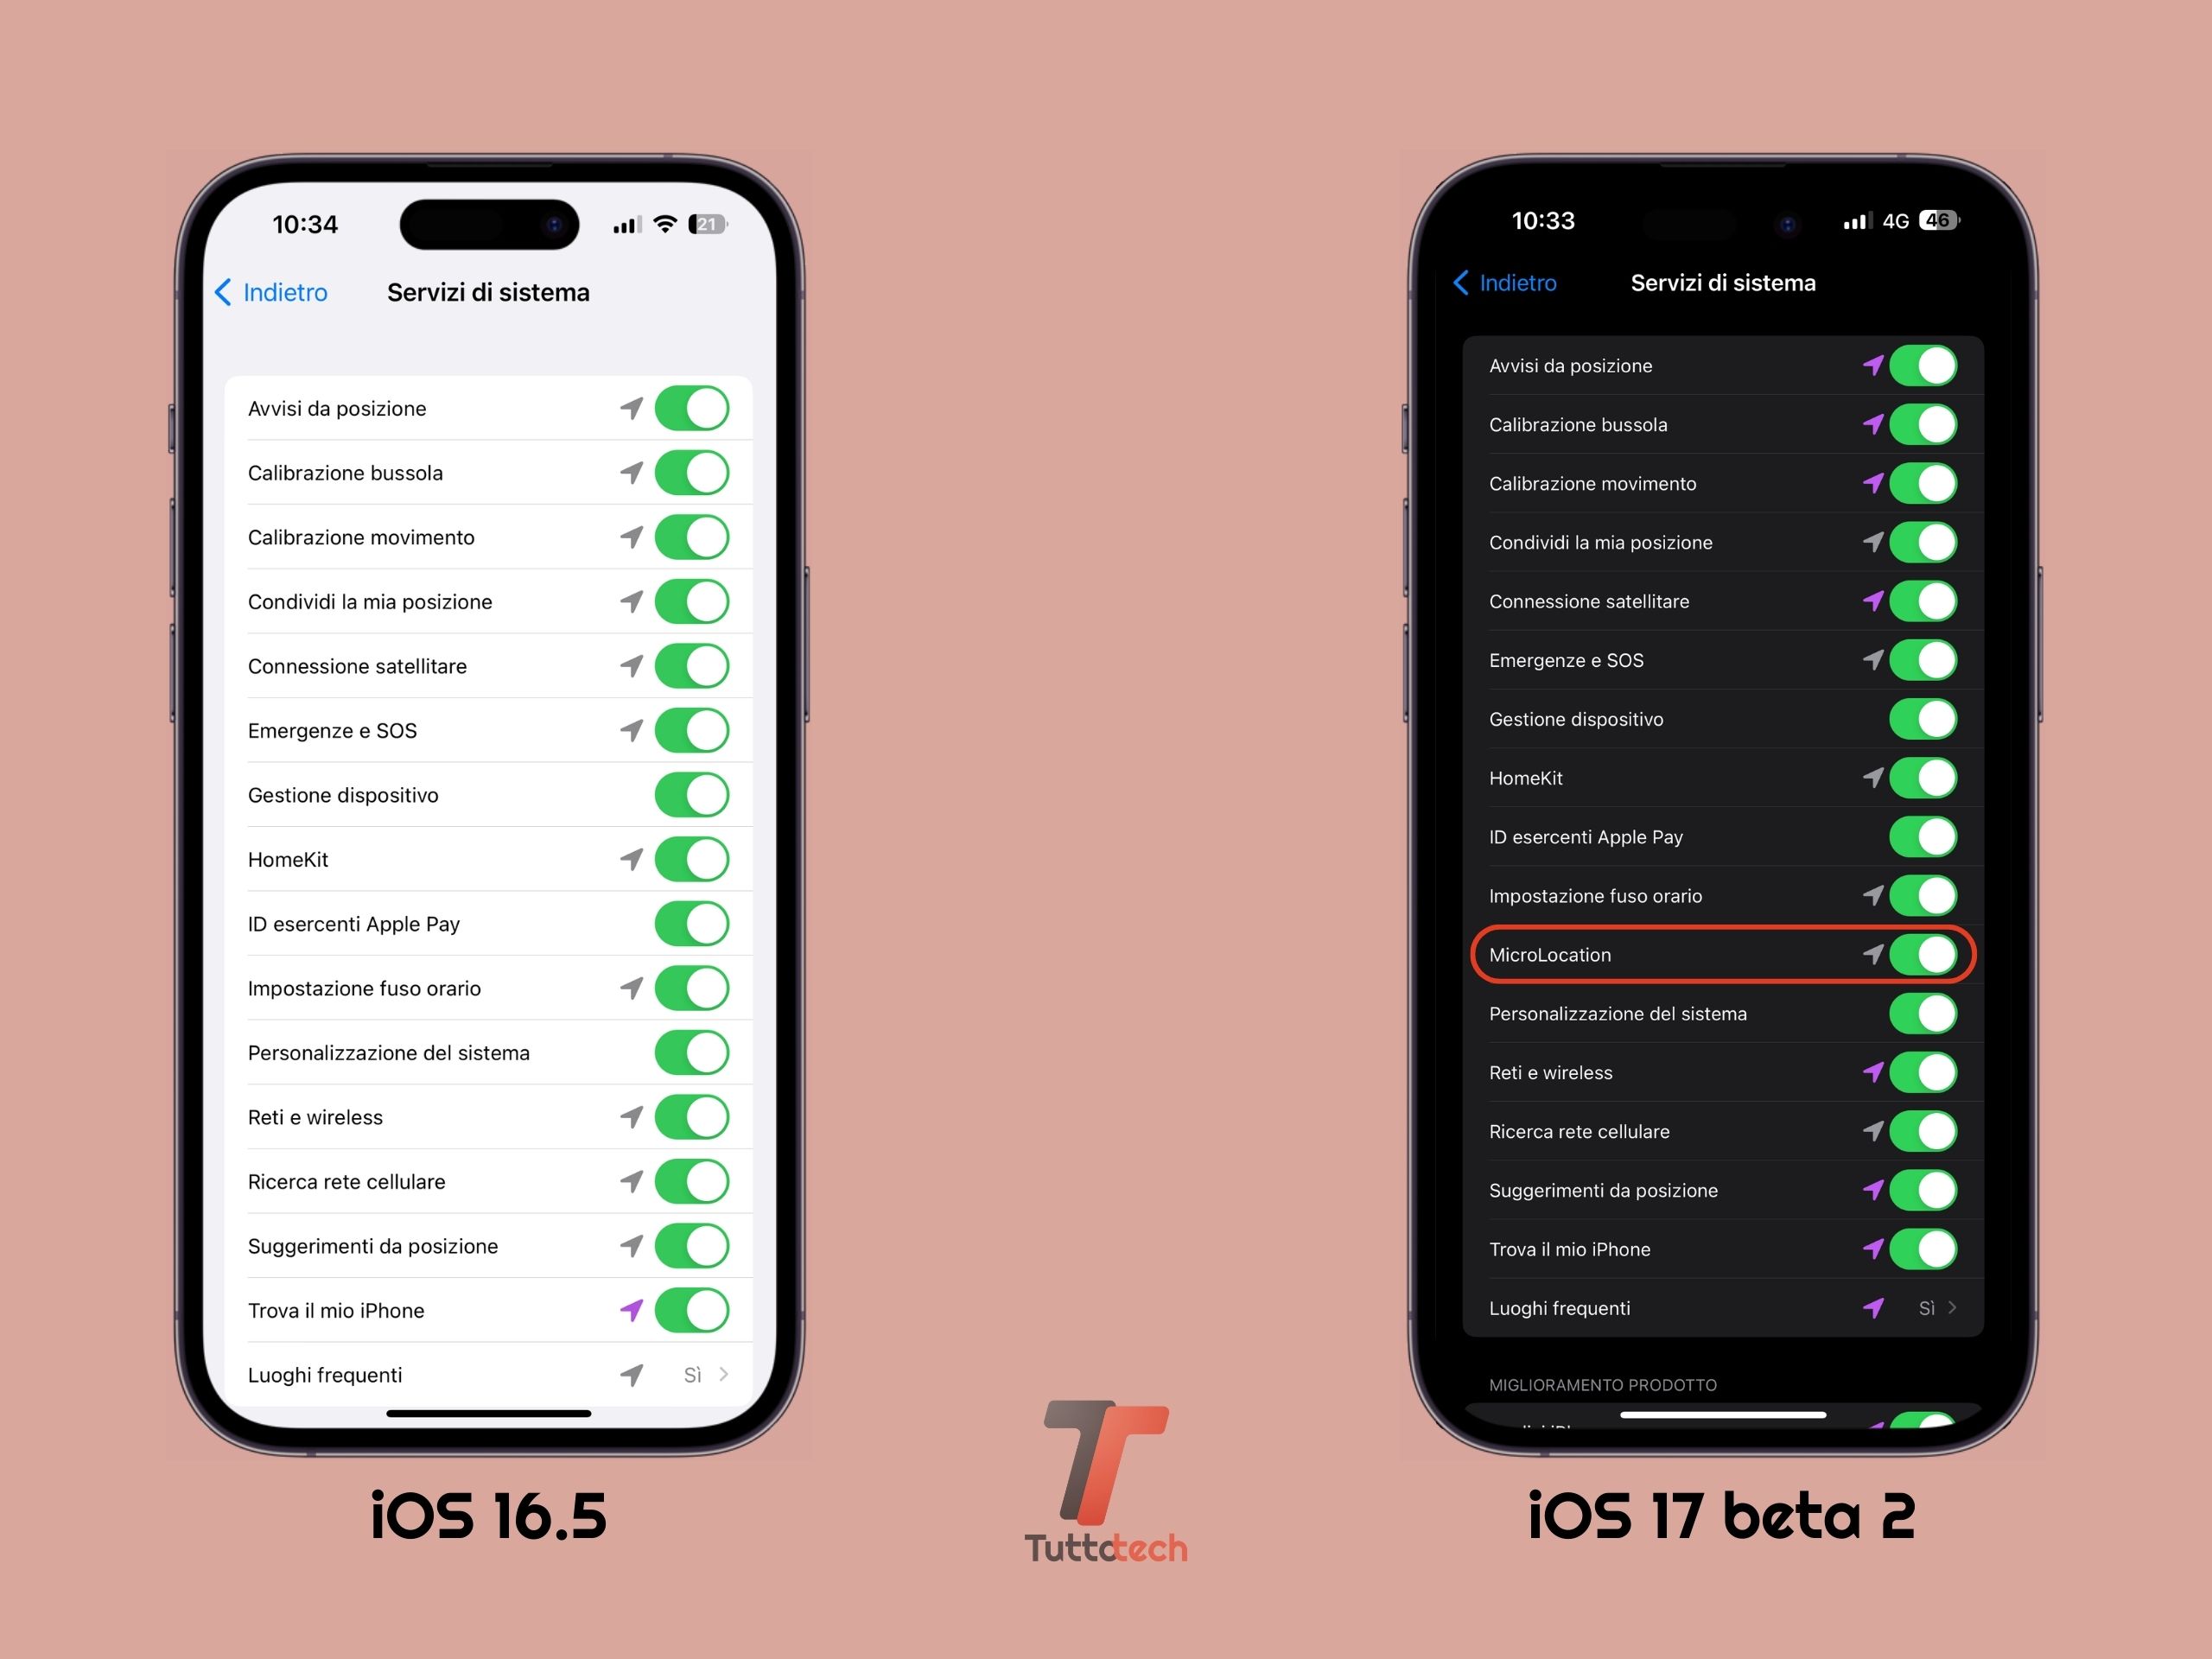 Apple iOS 16.5 vs iOS 17 DB2 - Localizzazione "Servizi di sistema"